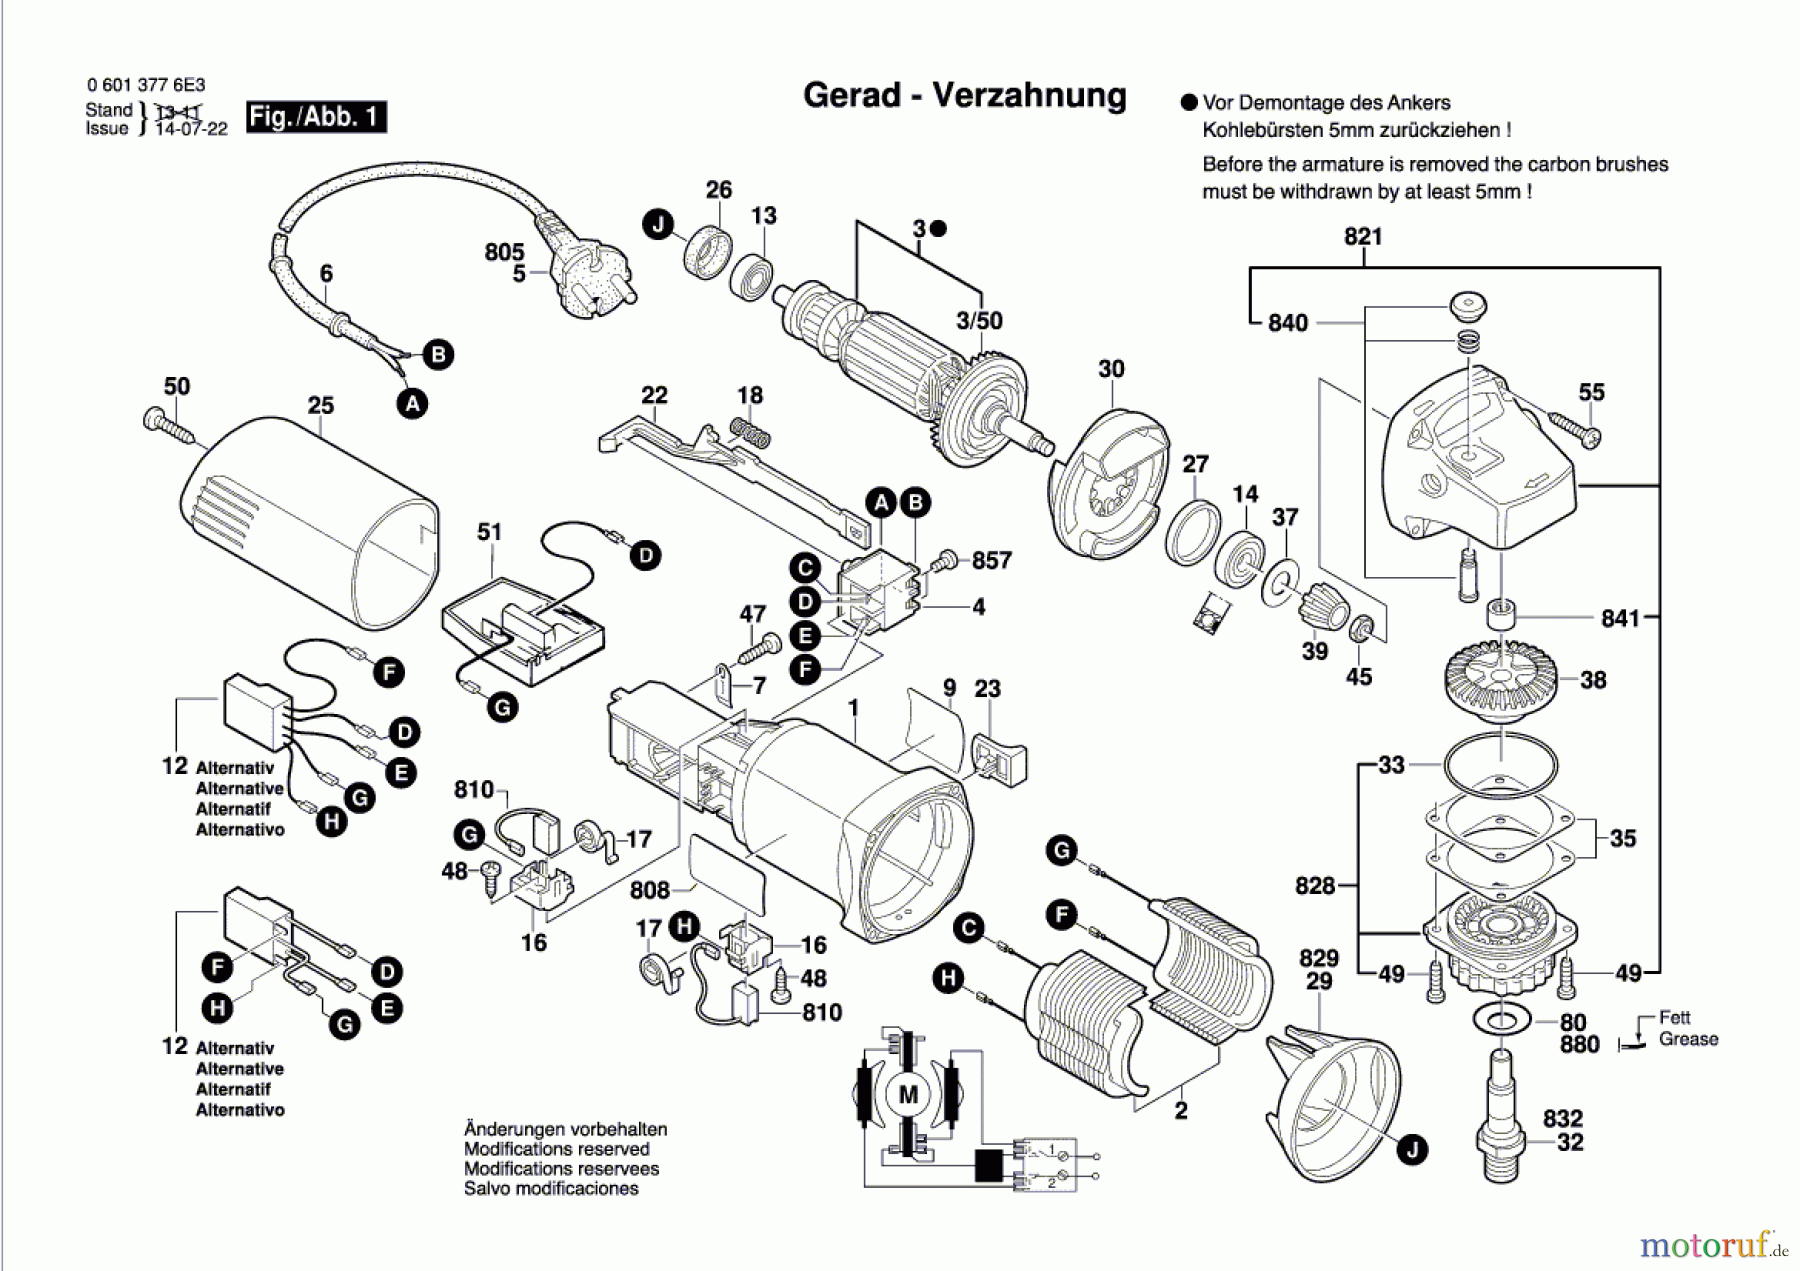  Bosch Werkzeug Winkelschleifer GWS 8-100 CE Seite 1